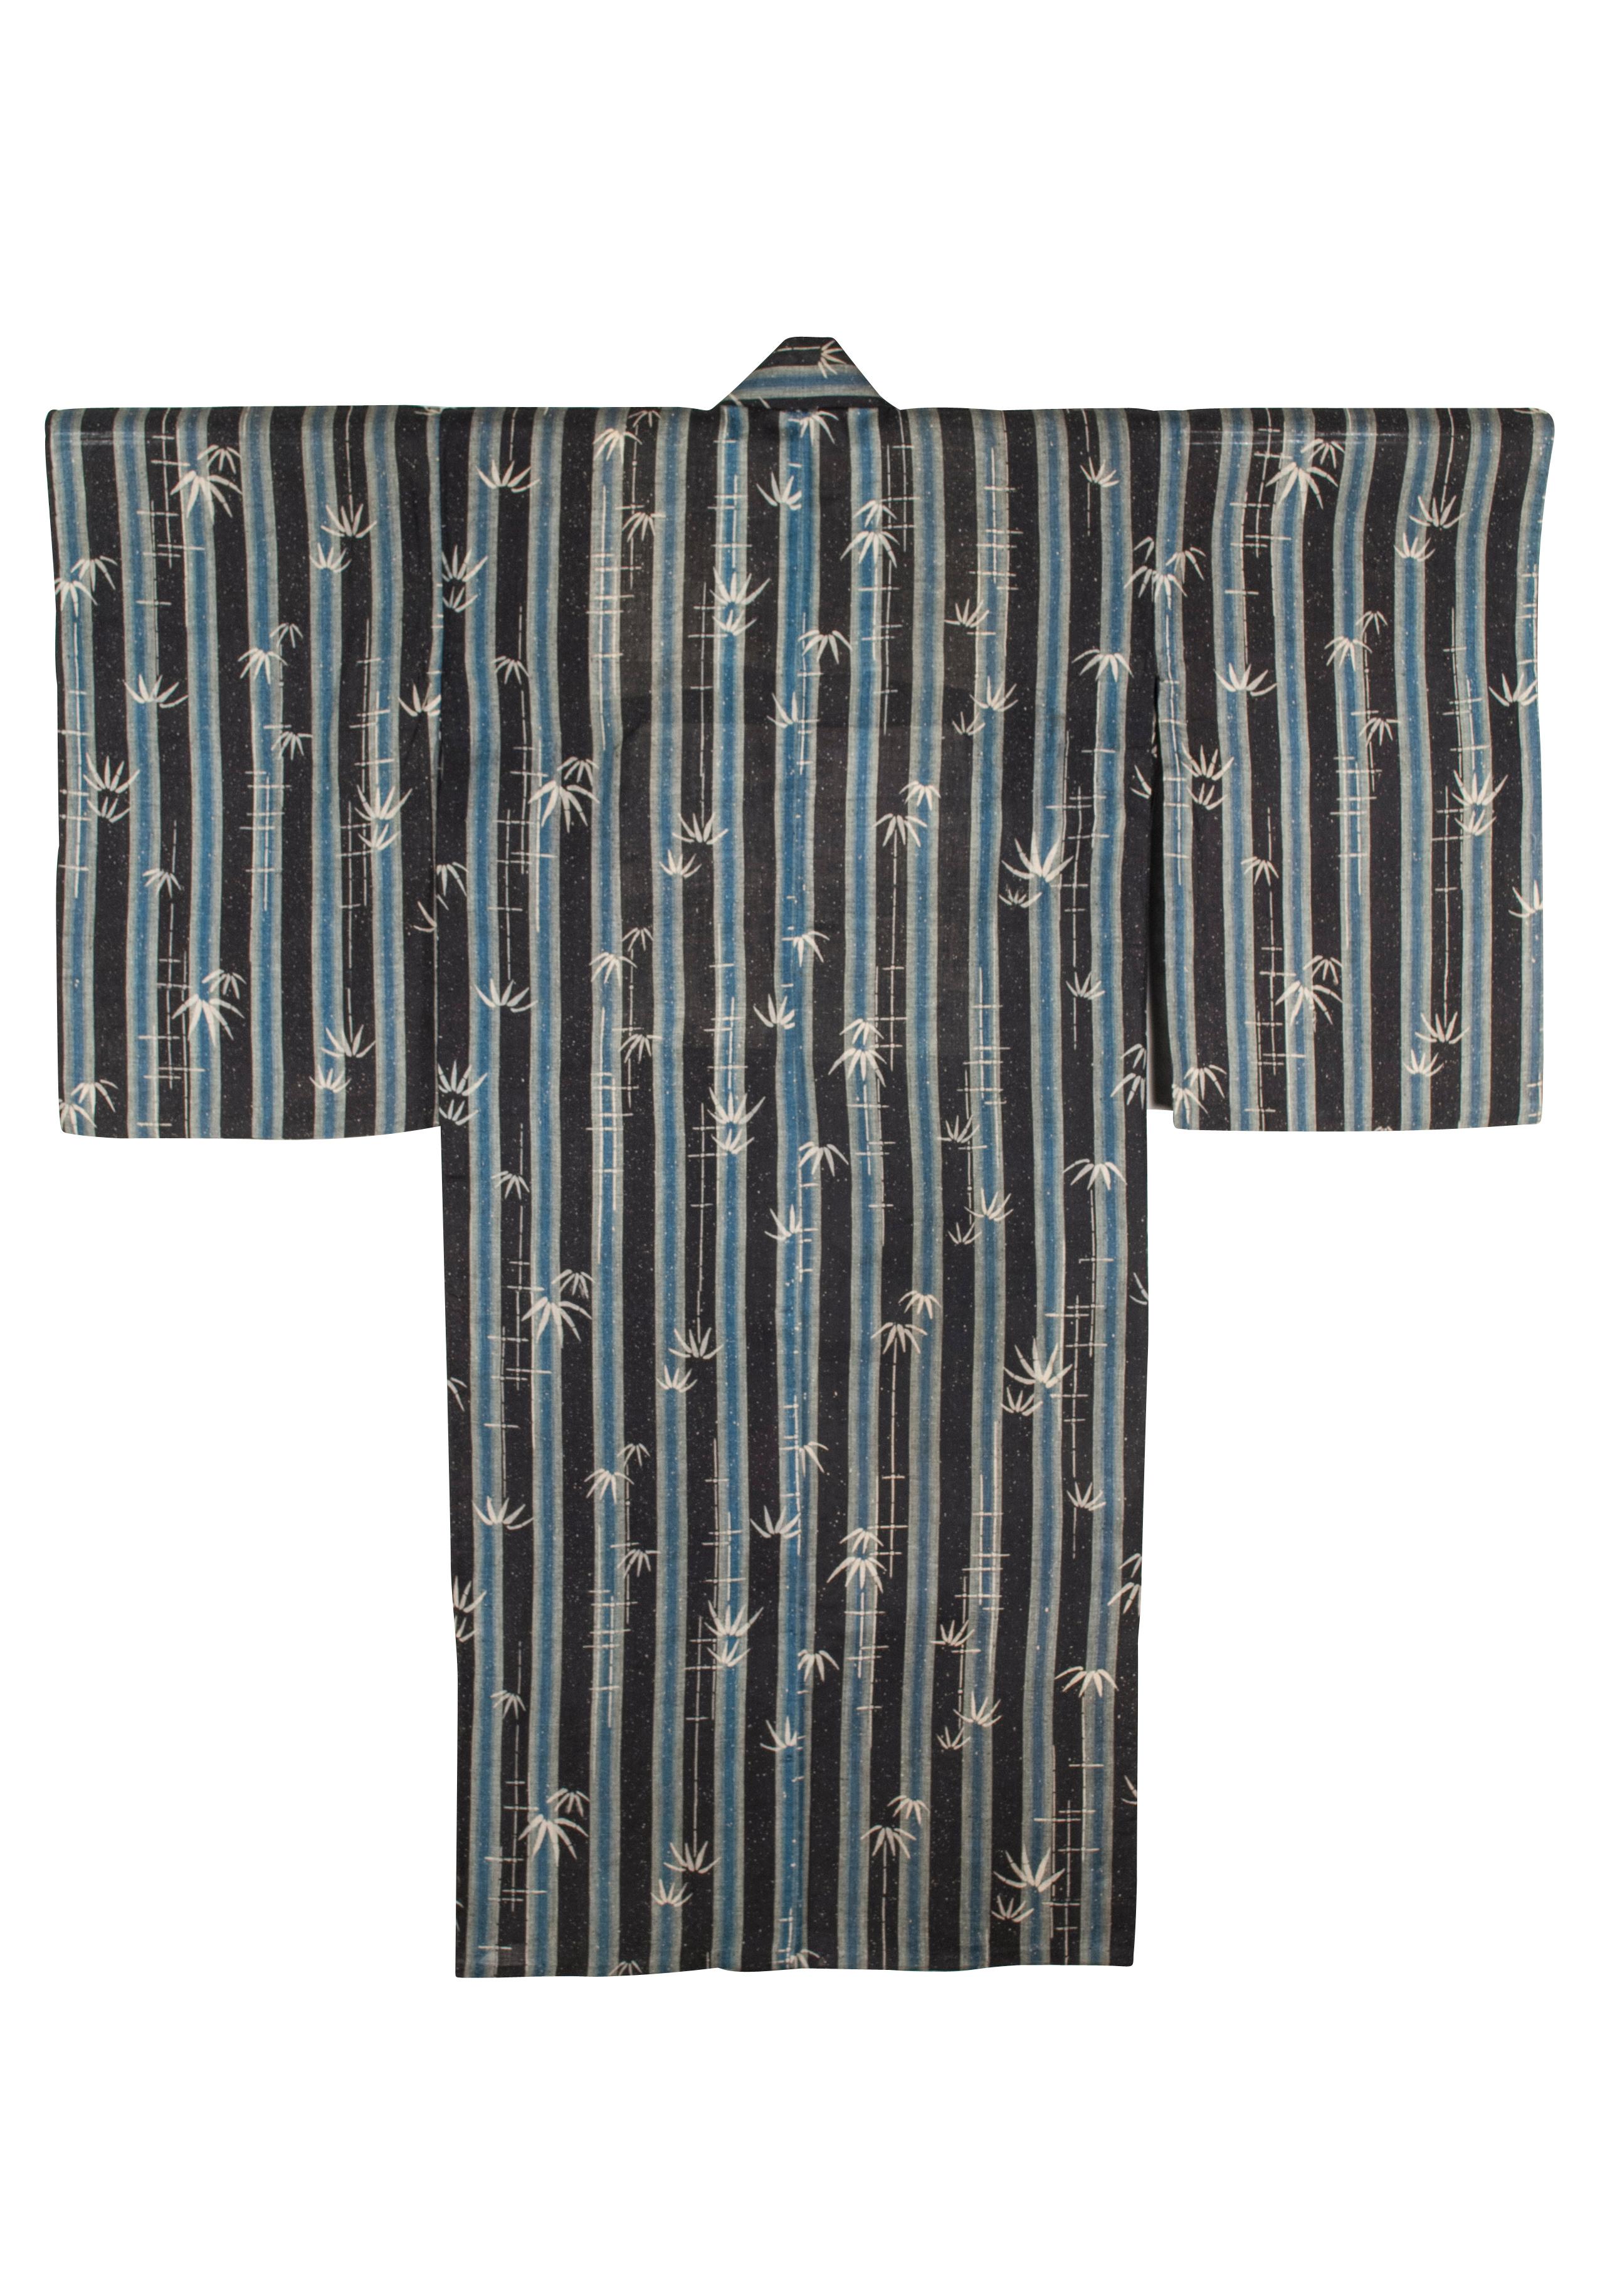 Kimono d'été japonais teint au pochoir à motif de bambou de la période Taisho-Early Showa